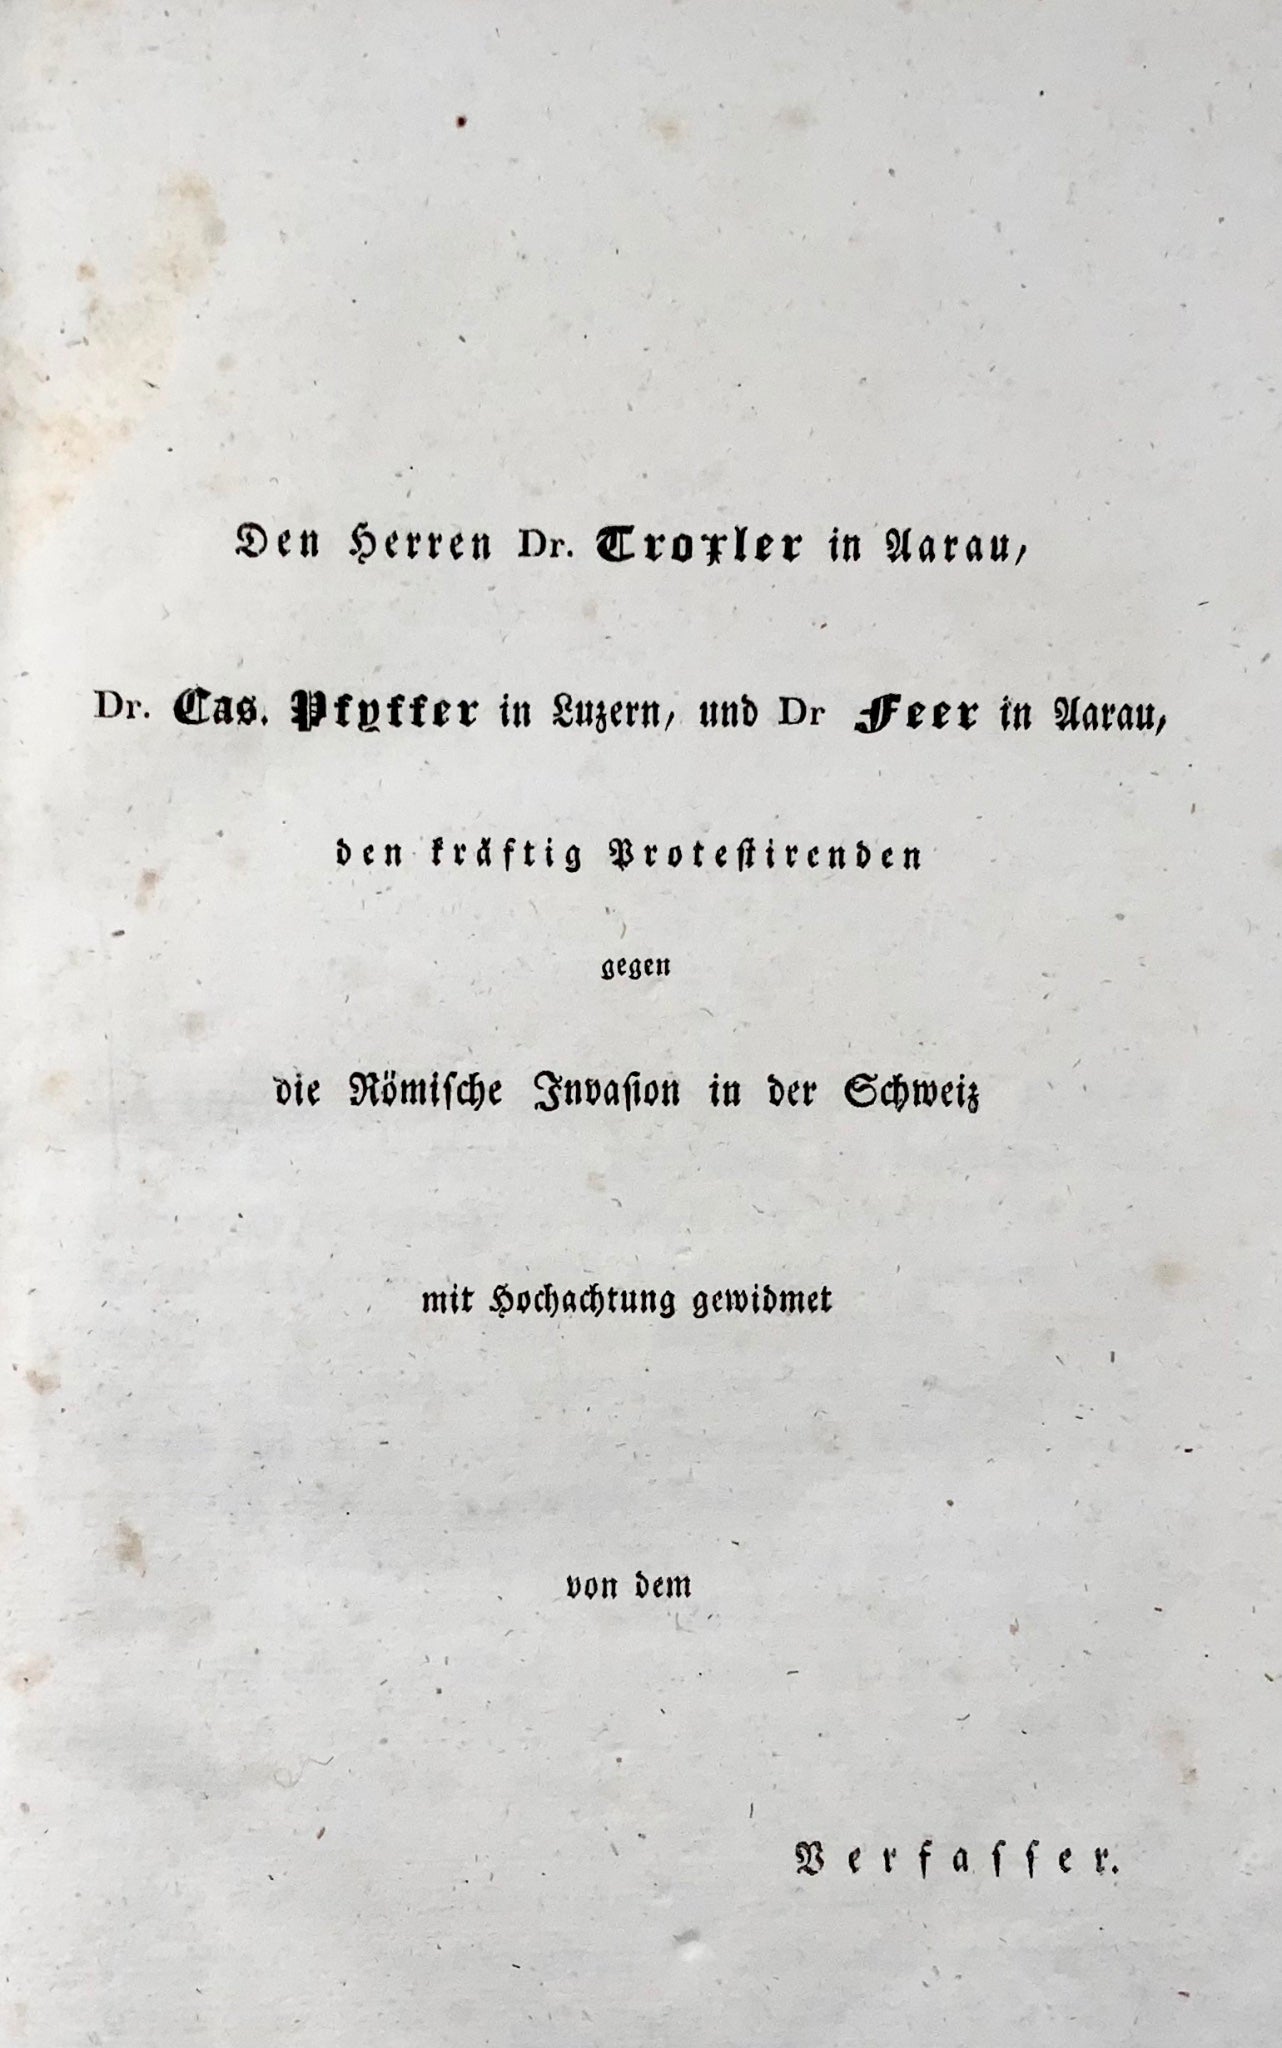 1833 Ludwig Snell, critico liberale radicale dei cattolici romani in Svizzera